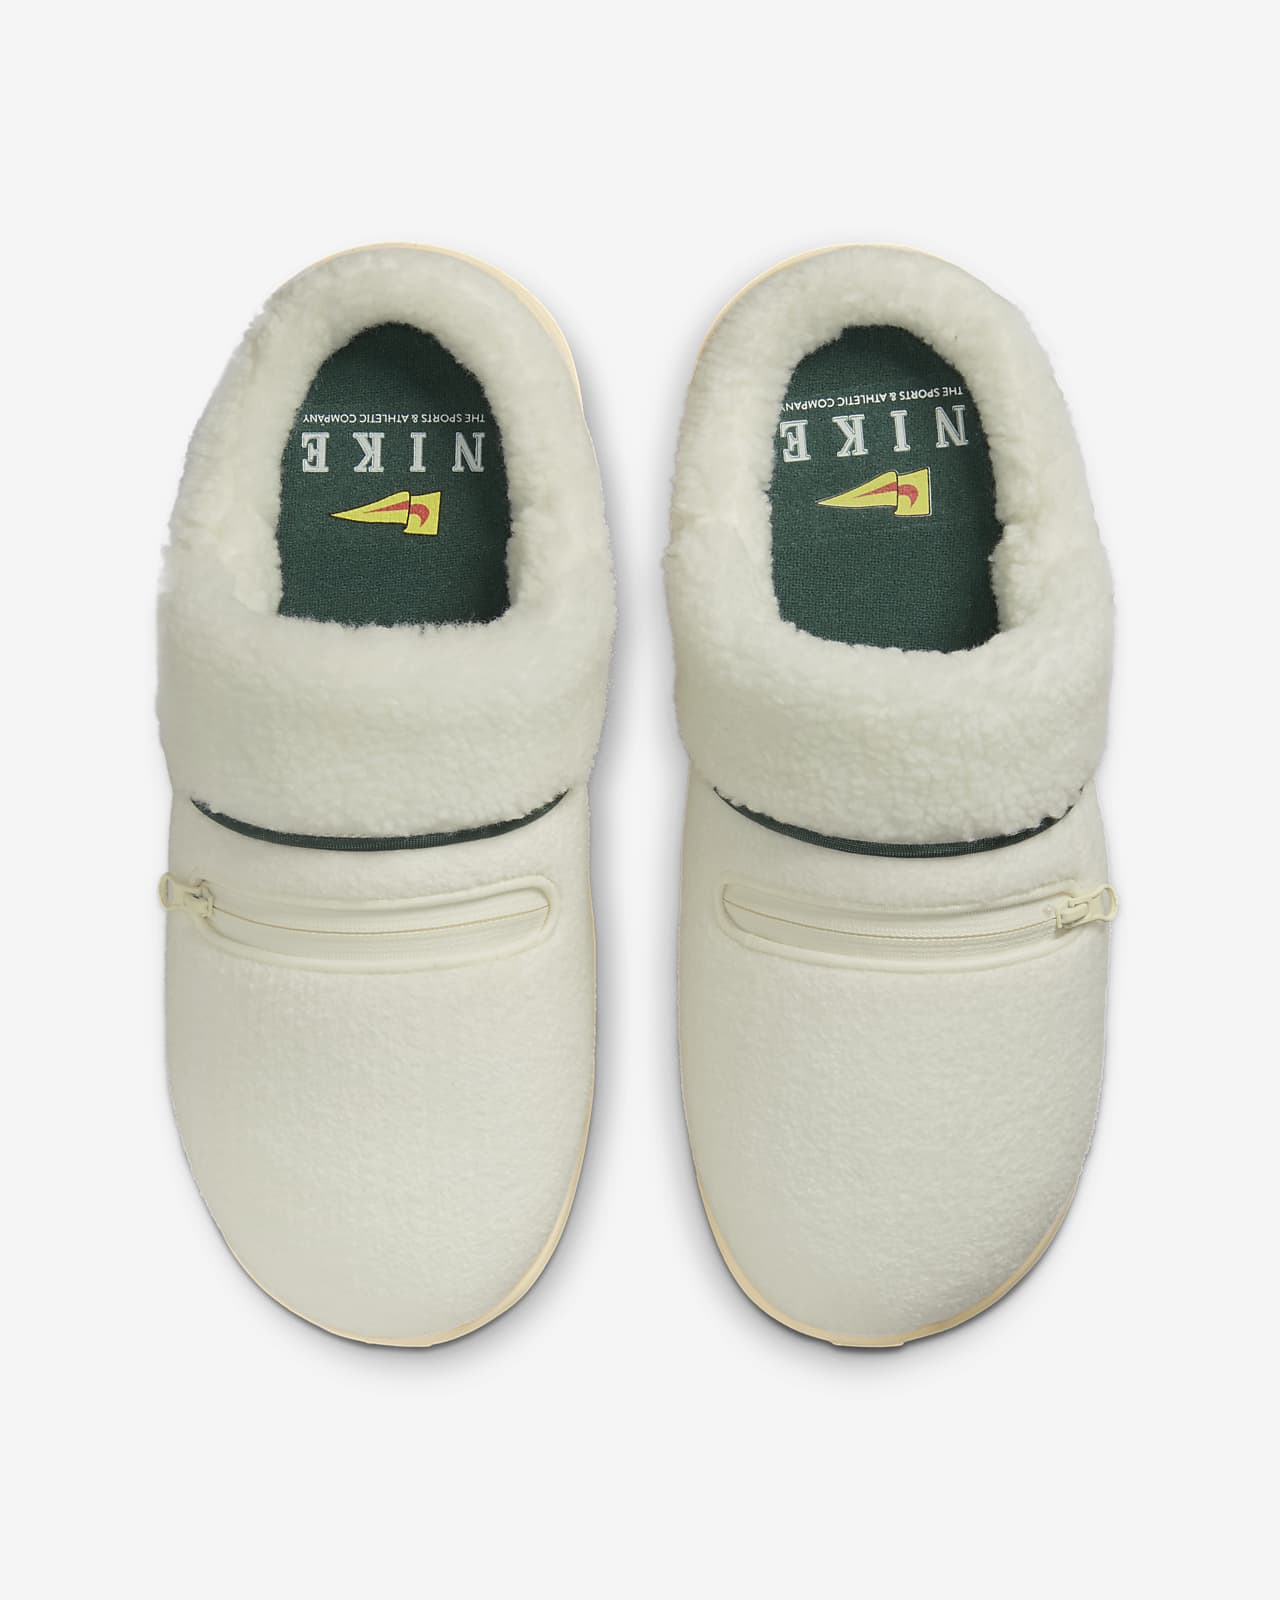 AIR' Jordan Sneaker Slippers | Trend Sellers